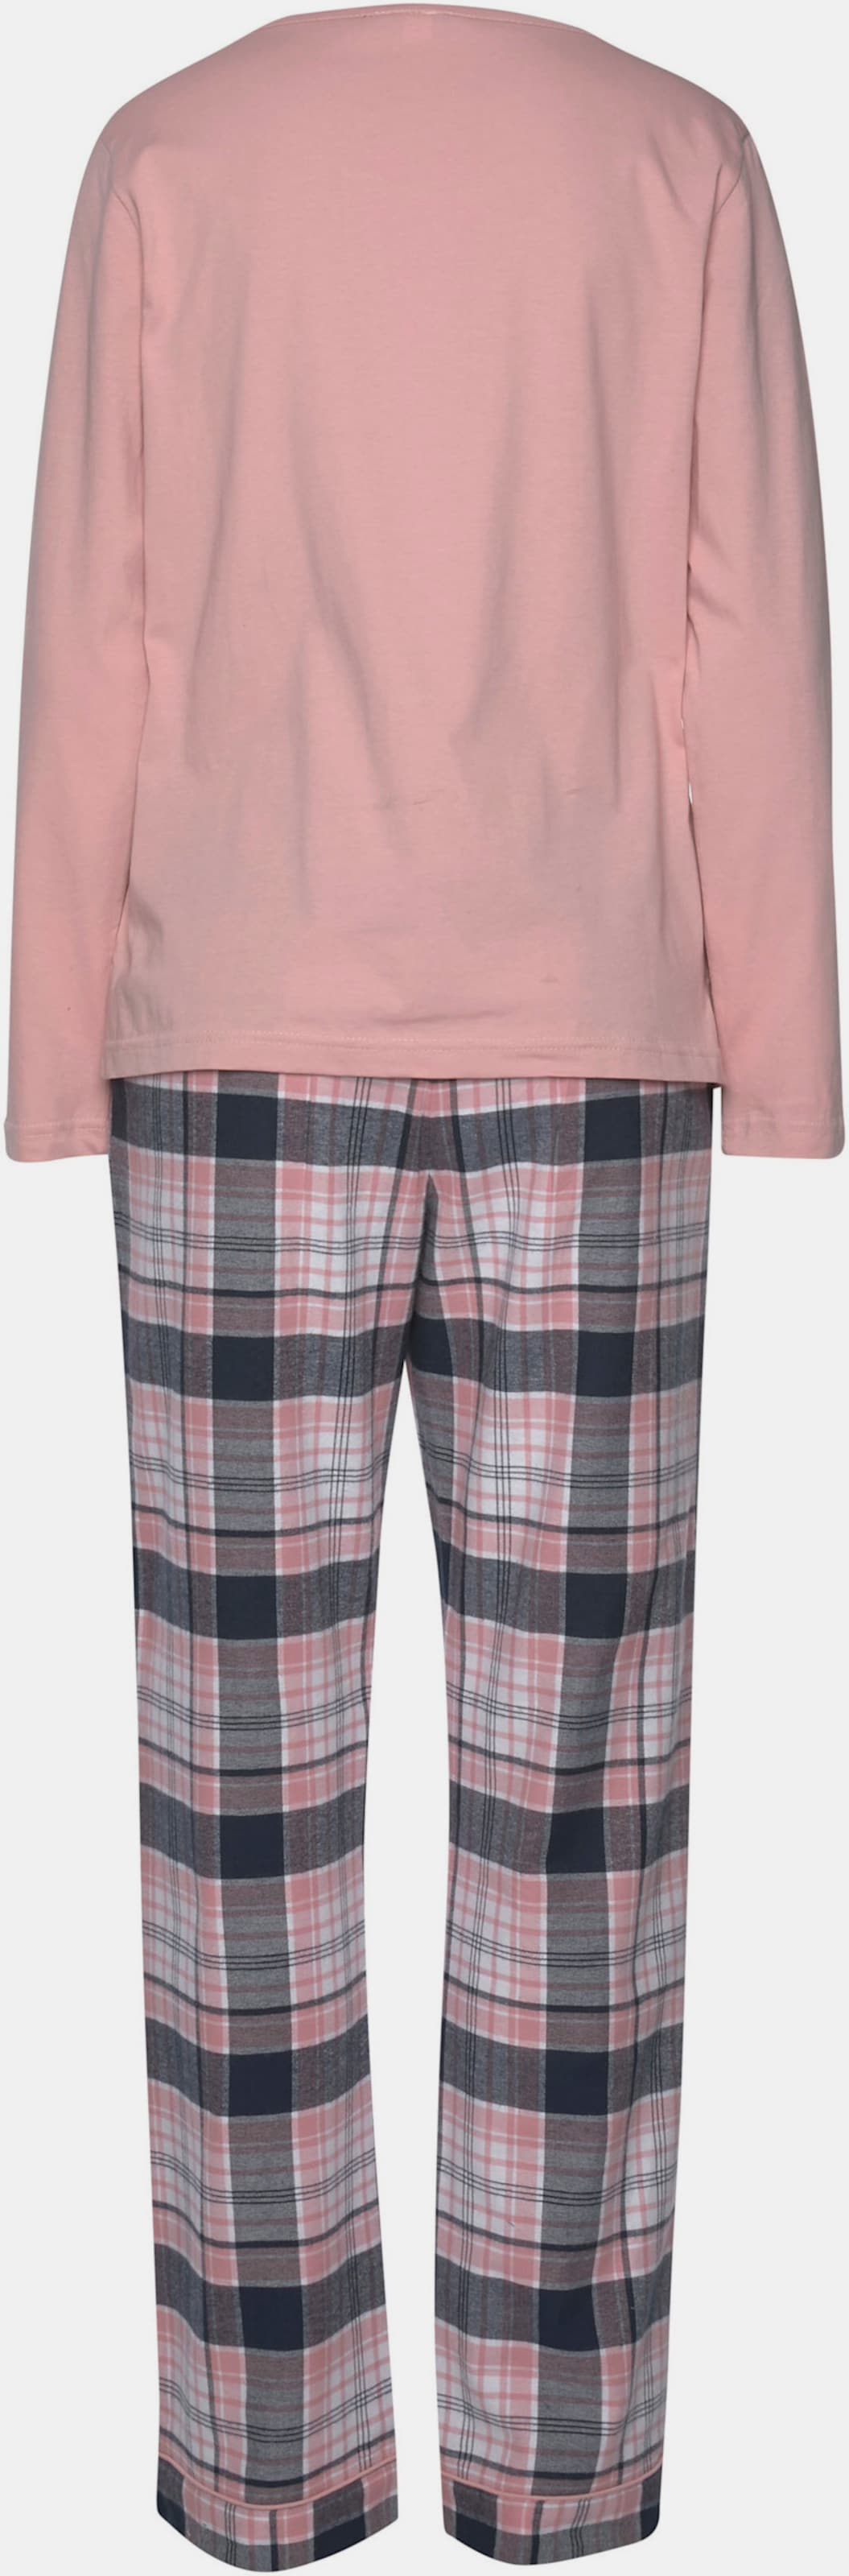 H.I.S Pyjama - lila-blau-rosa-kariert